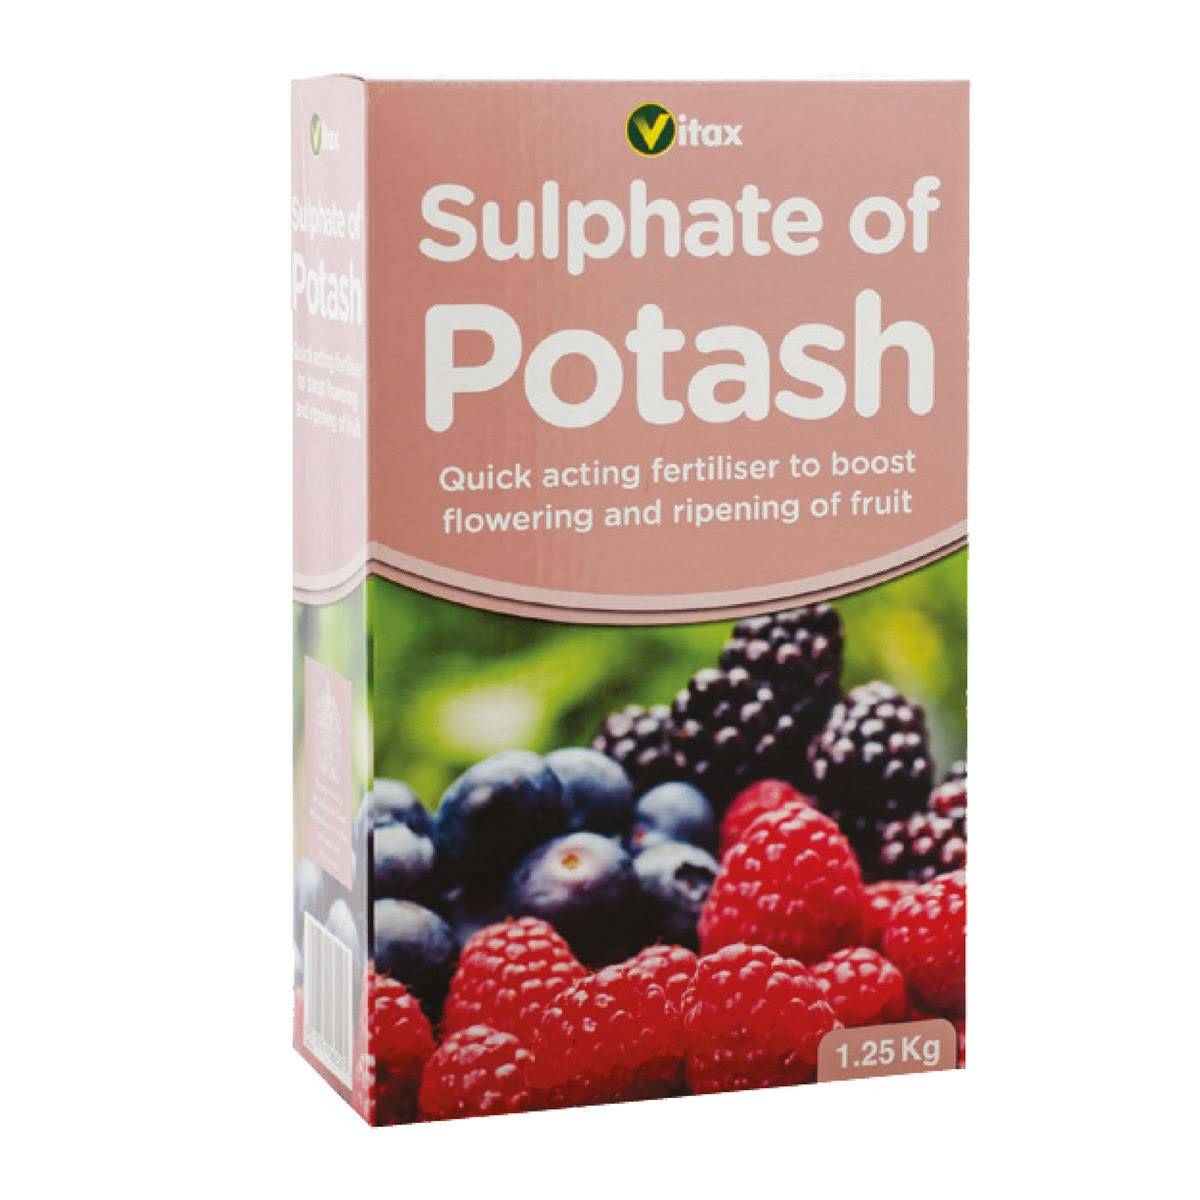 Vitax Sulphate of Potash Fertiliser - 1.25kg